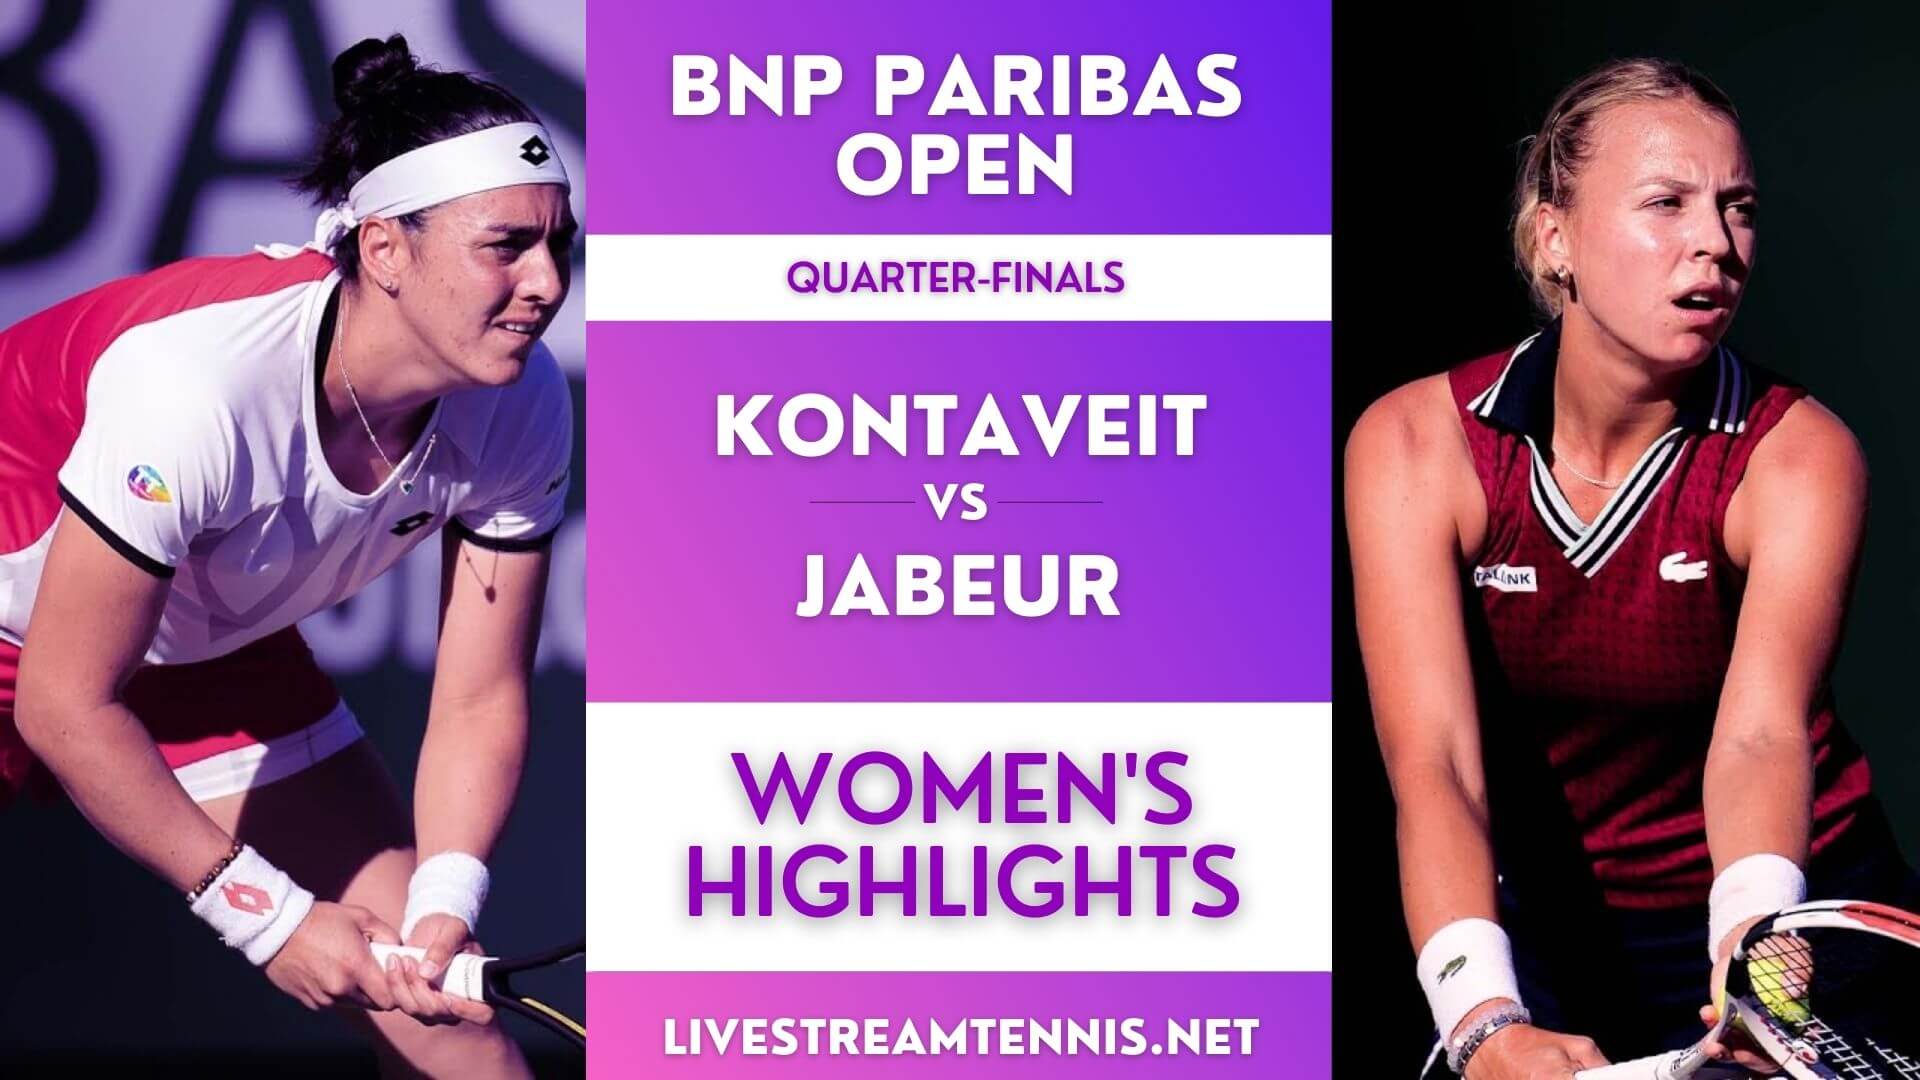 BNP Paribas Open Women Quarter Final 4 Highlights 2021